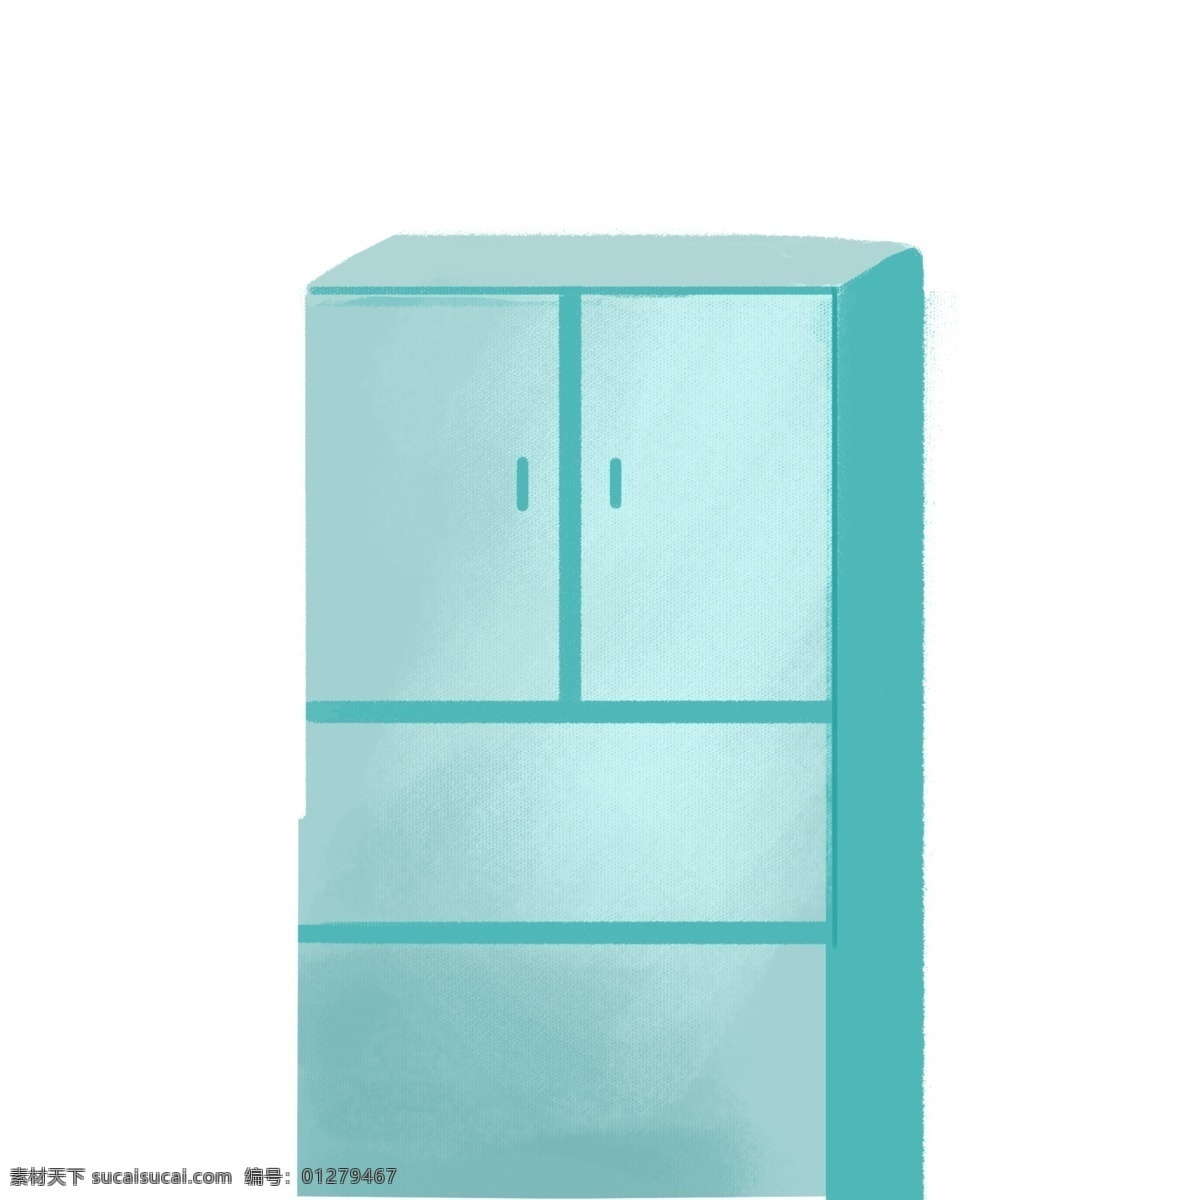 浅蓝色 柜子 图案 家居 柜子图案 家具 设计元素 手绘元素 psd元素 免抠元素